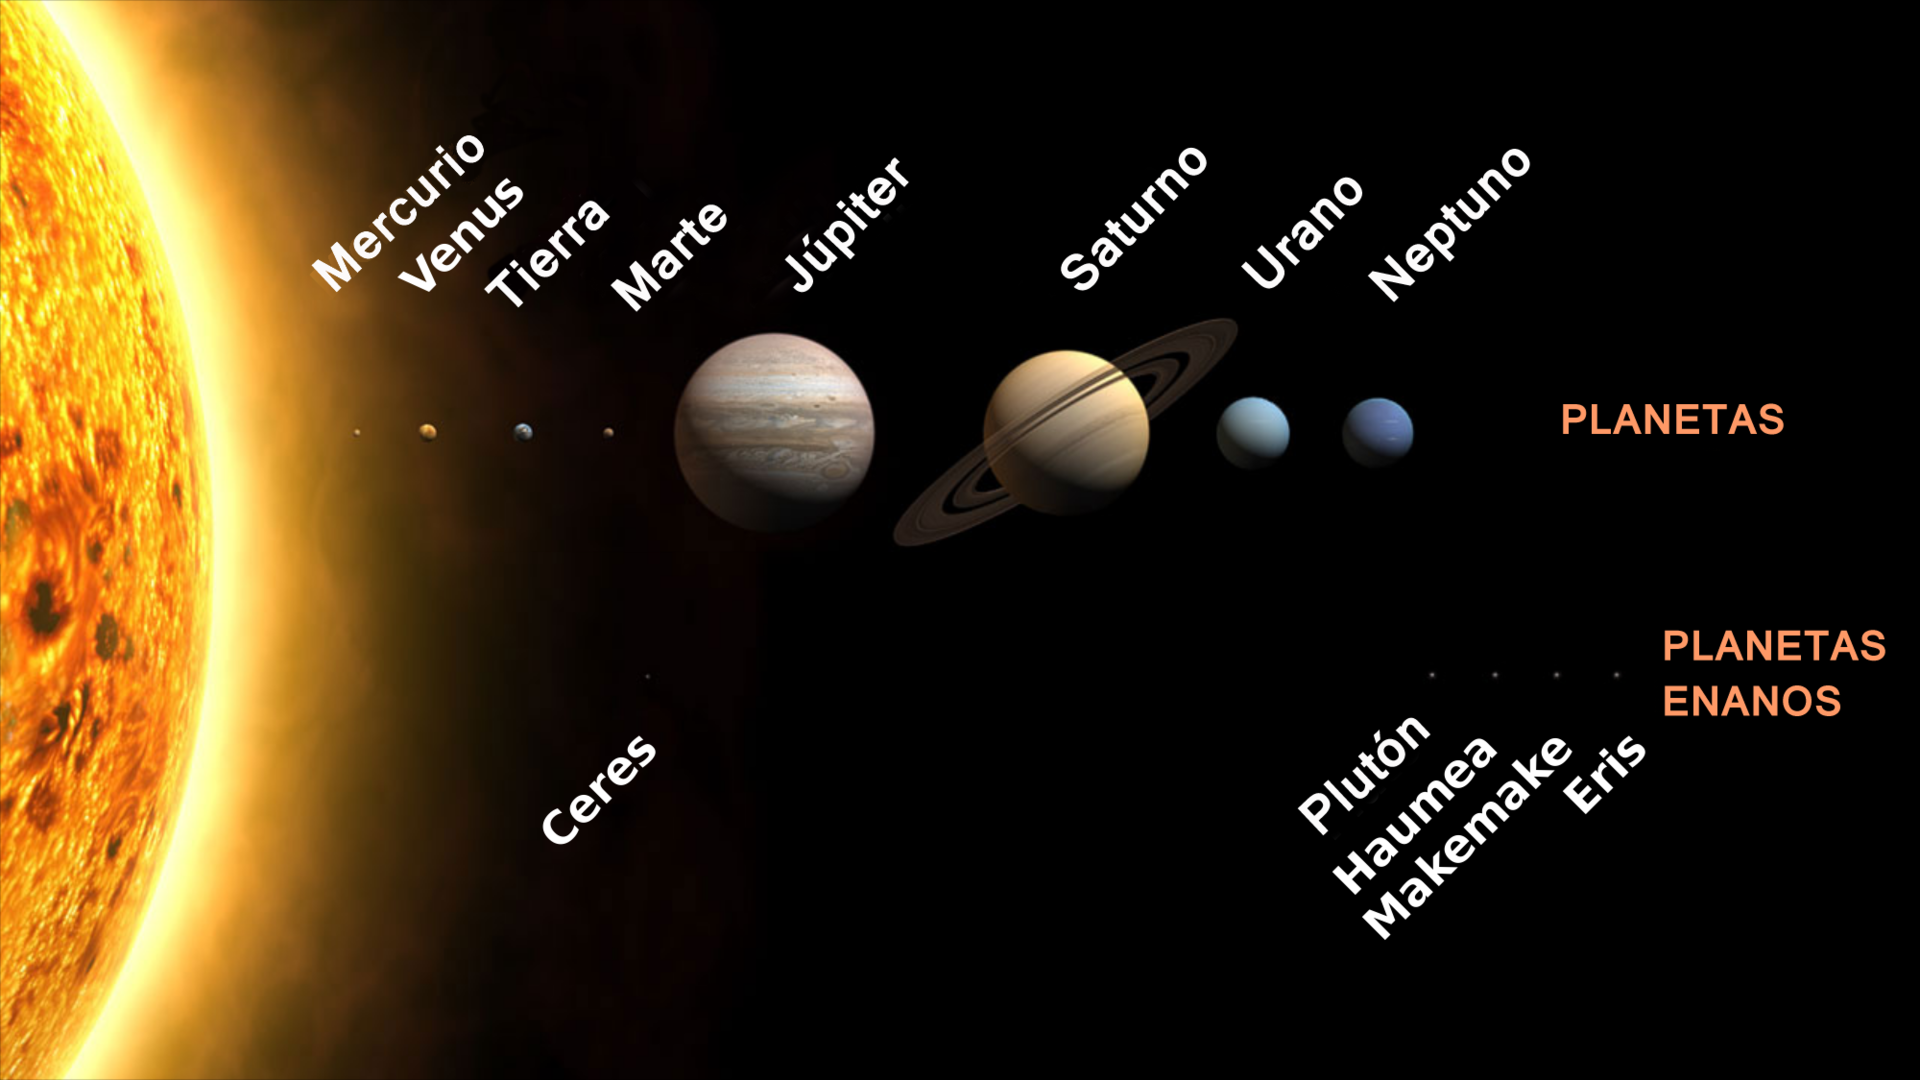 Planetas y planetas enanos del Sistema Solar. Imagen: Farry.